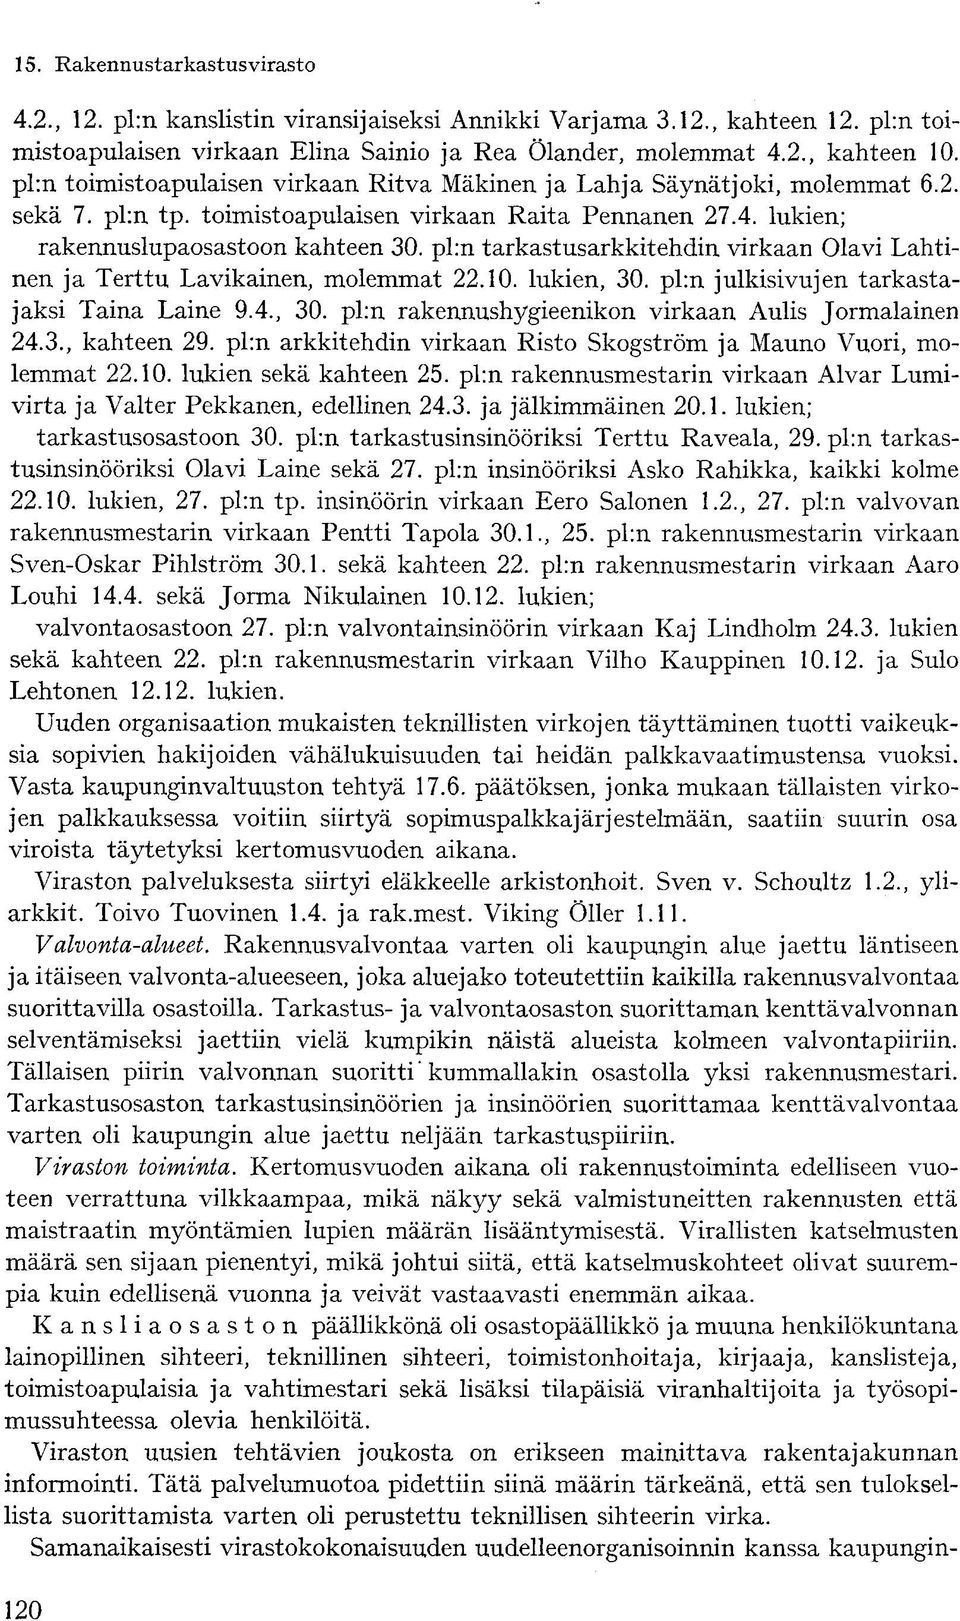 pl:n tarkastusarkkitehdin virkaan Olavi Lahtinen ja Terttu Lavikainen, molemmat 22.10. lukien, 30. pl:n julkisivujen tarkastajaksi Taina Laine 9.4., 30. pl:n rakennushygieenikon virkaan Aulis Jormalainen 24.